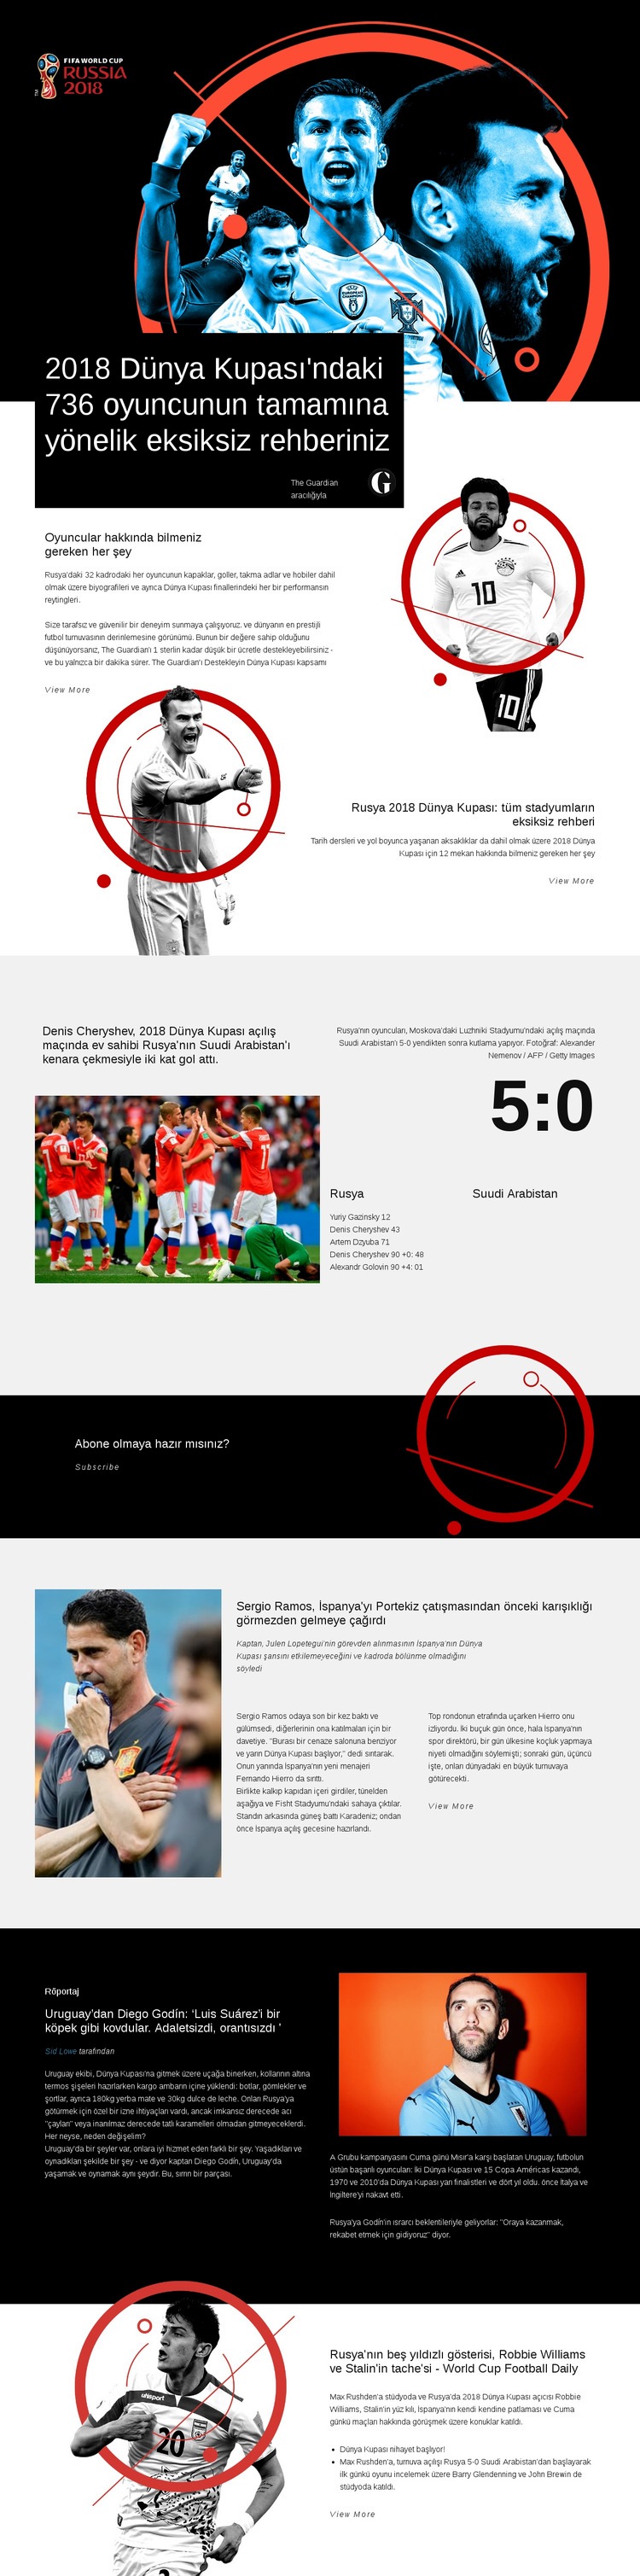 Dünya Kupası 2018 Web sitesi tasarımı